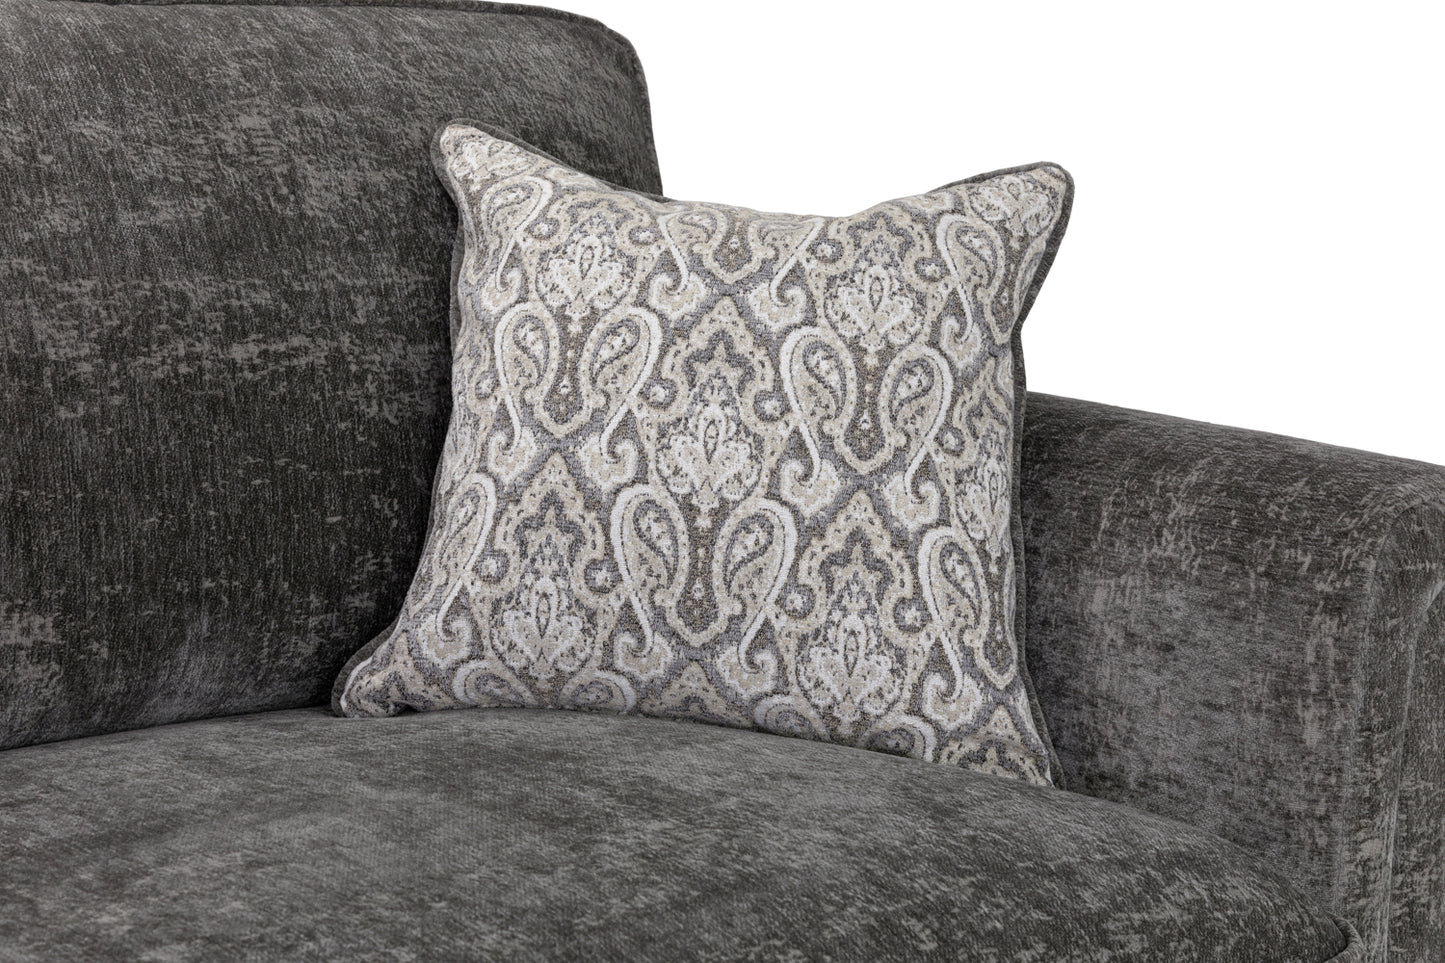 Arron Sofa Grey Armchair